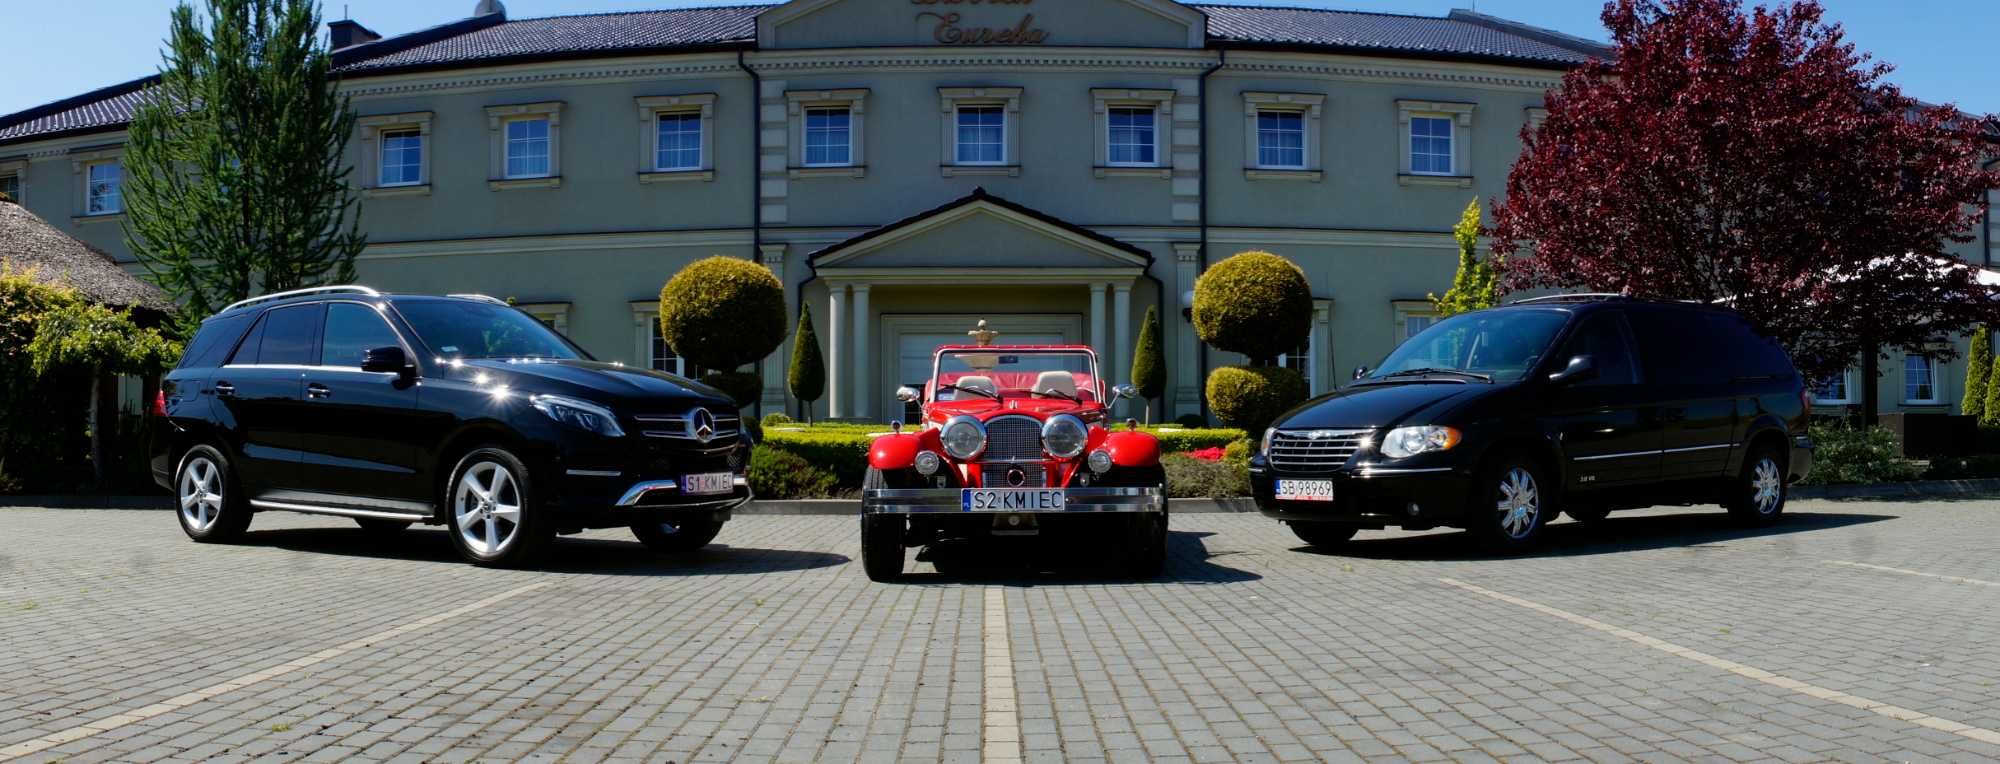 Auto/samochód do ślubu, Alfa Romeo z 1932r, Morgan, Mercedes, Chrysler